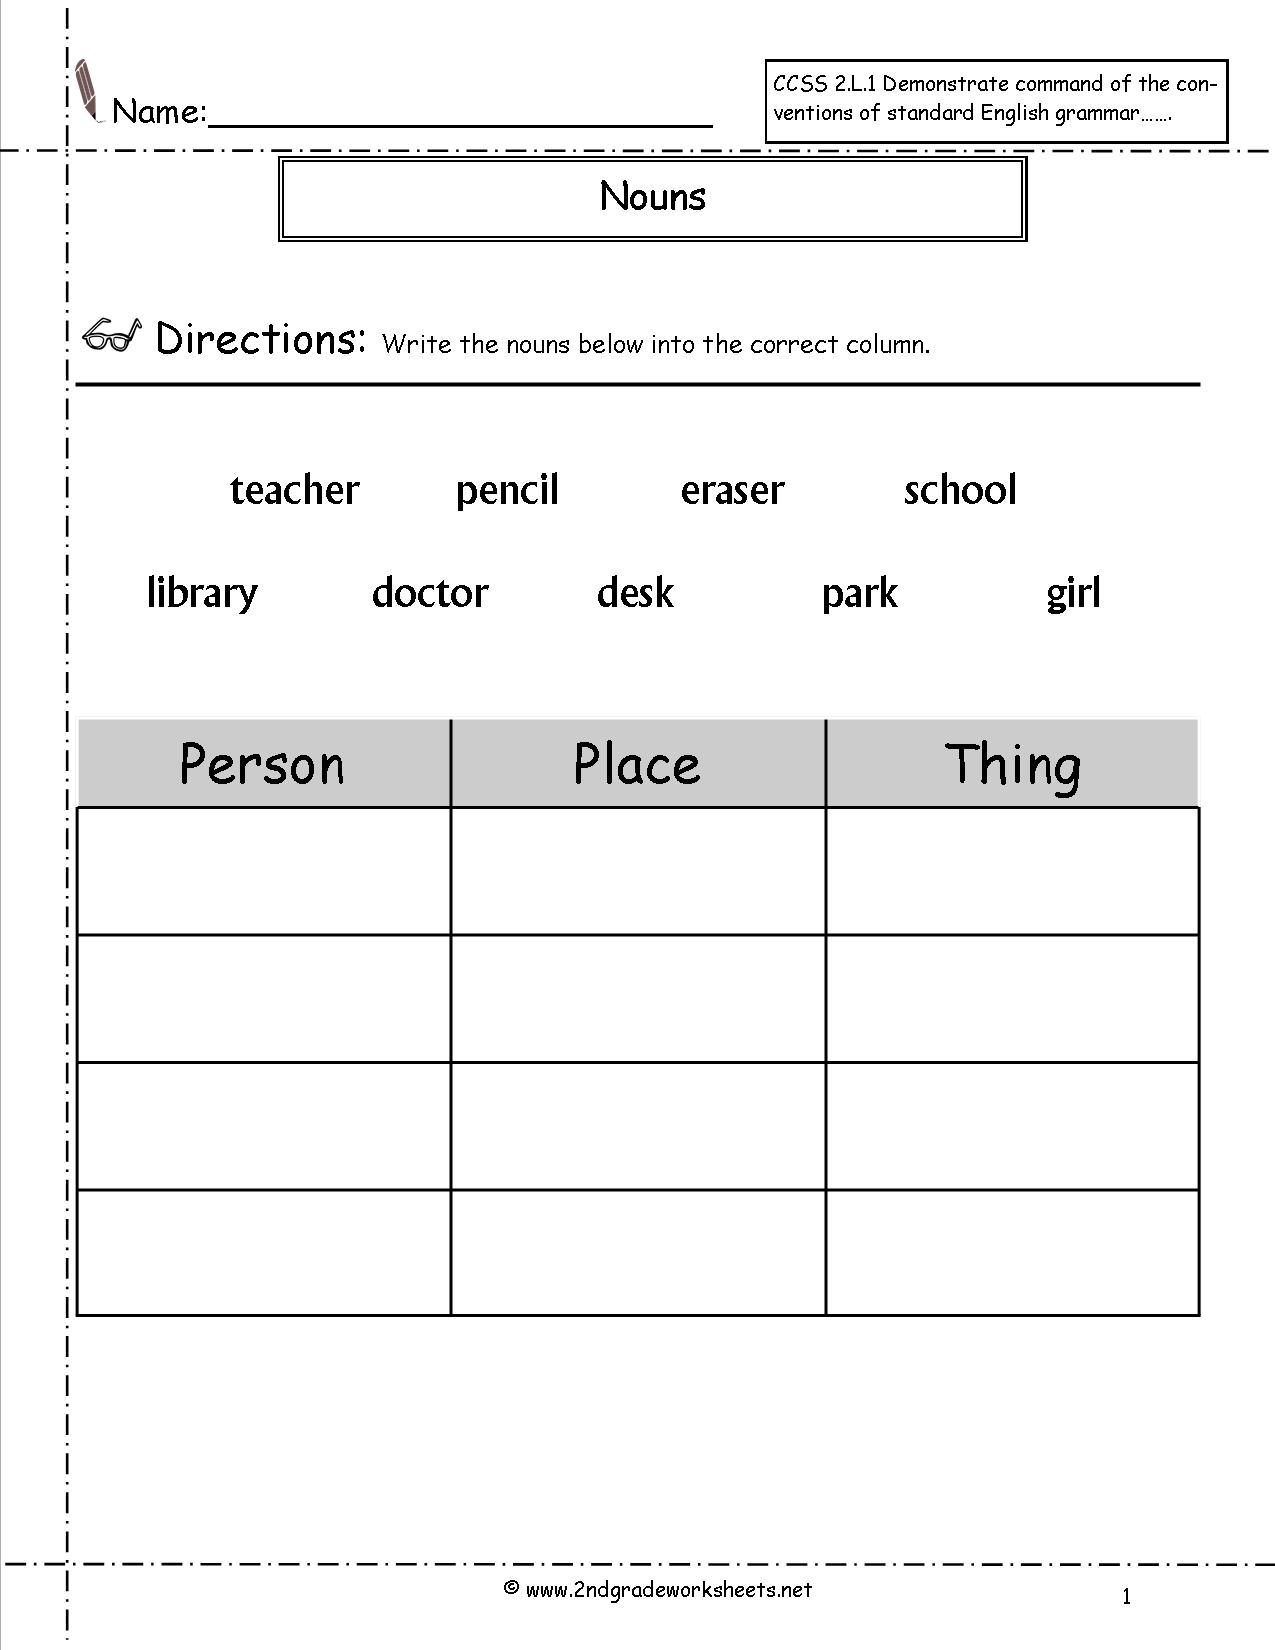 Proper Noun 2nd Grade Worksheet